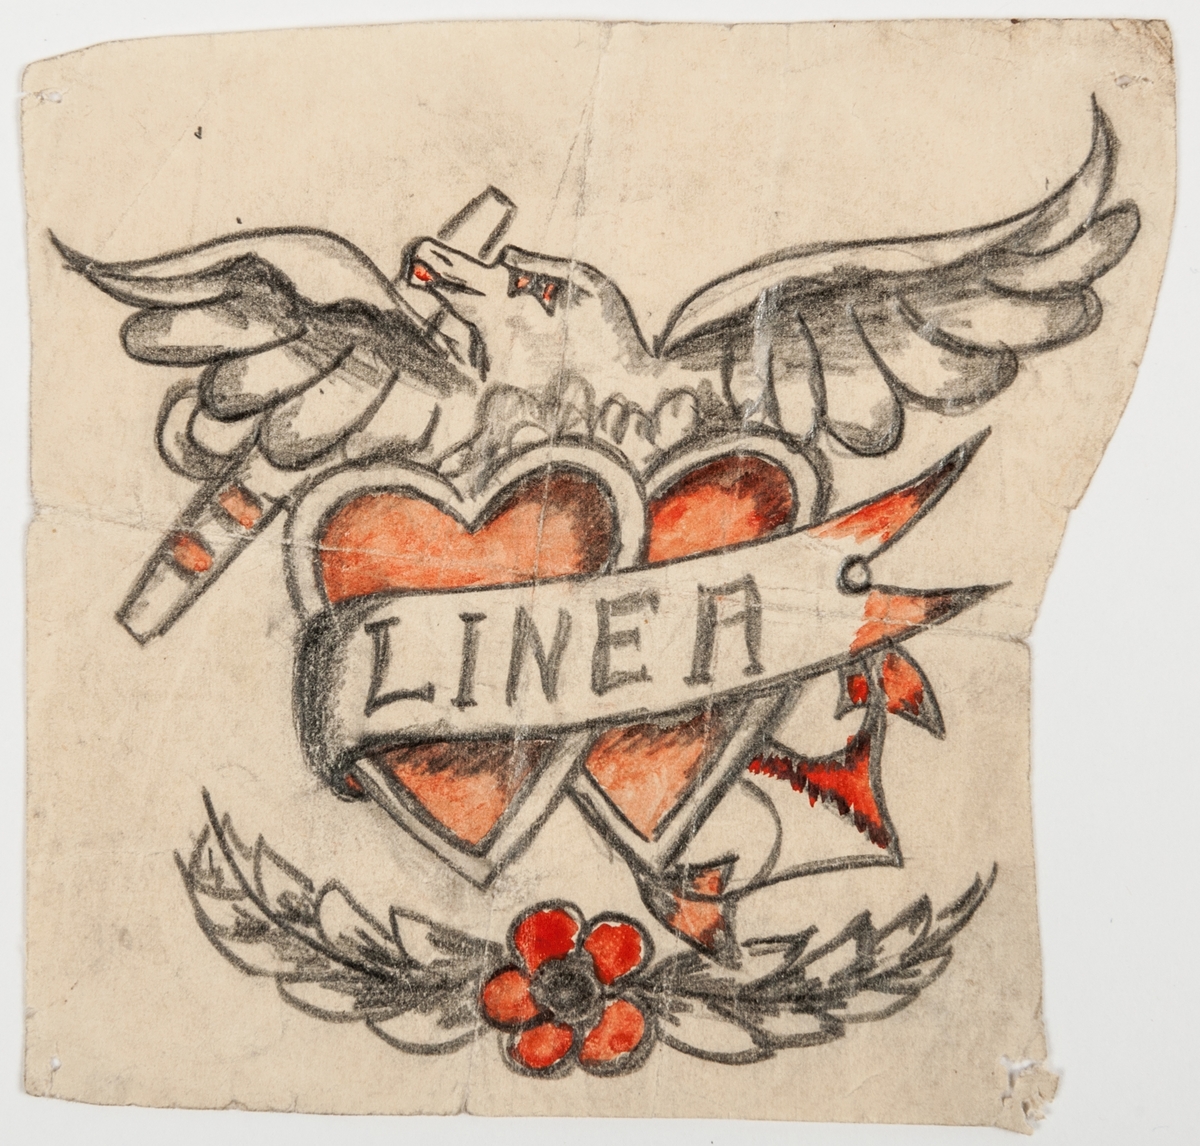 Tatueringsförelagor. 4 stycken teckningar föreställande kvinna med stjärnbanér, fregatt med kvinnoansikte, räddningskrans, skepp "Sailors grave" hjärtan, orm, örn med namnet Linnéa, m.m.